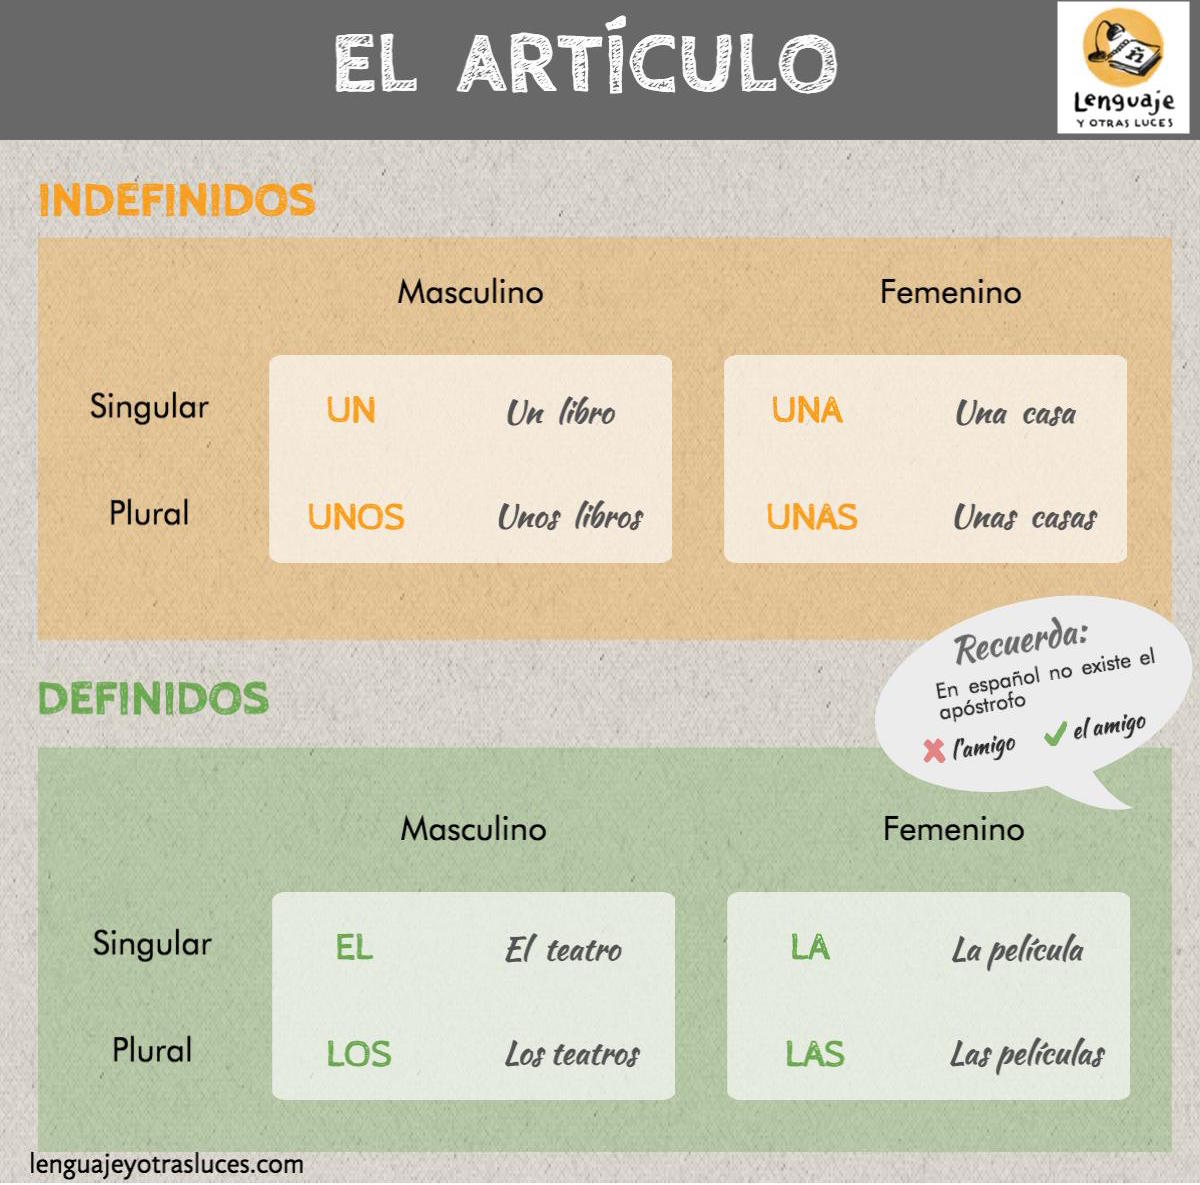 El artículo en español. Artículos definidos e indefinidos